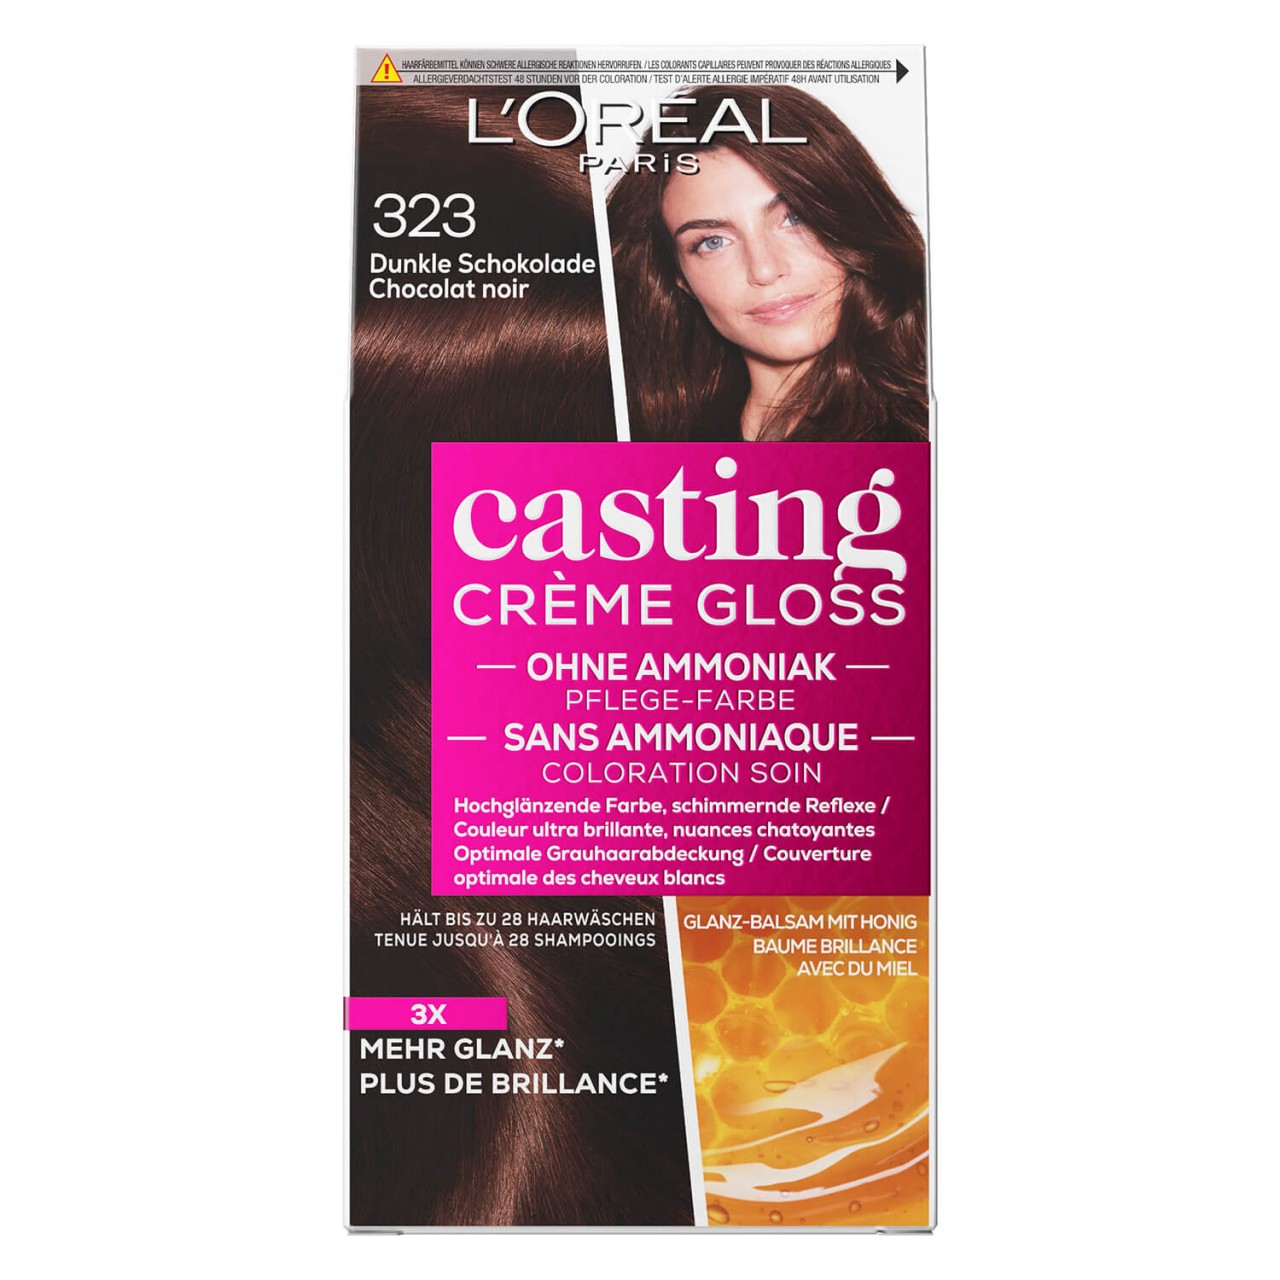 LOréal Casting - Crème Gloss 323 Dunkle Schokolade von L'Oréal Paris